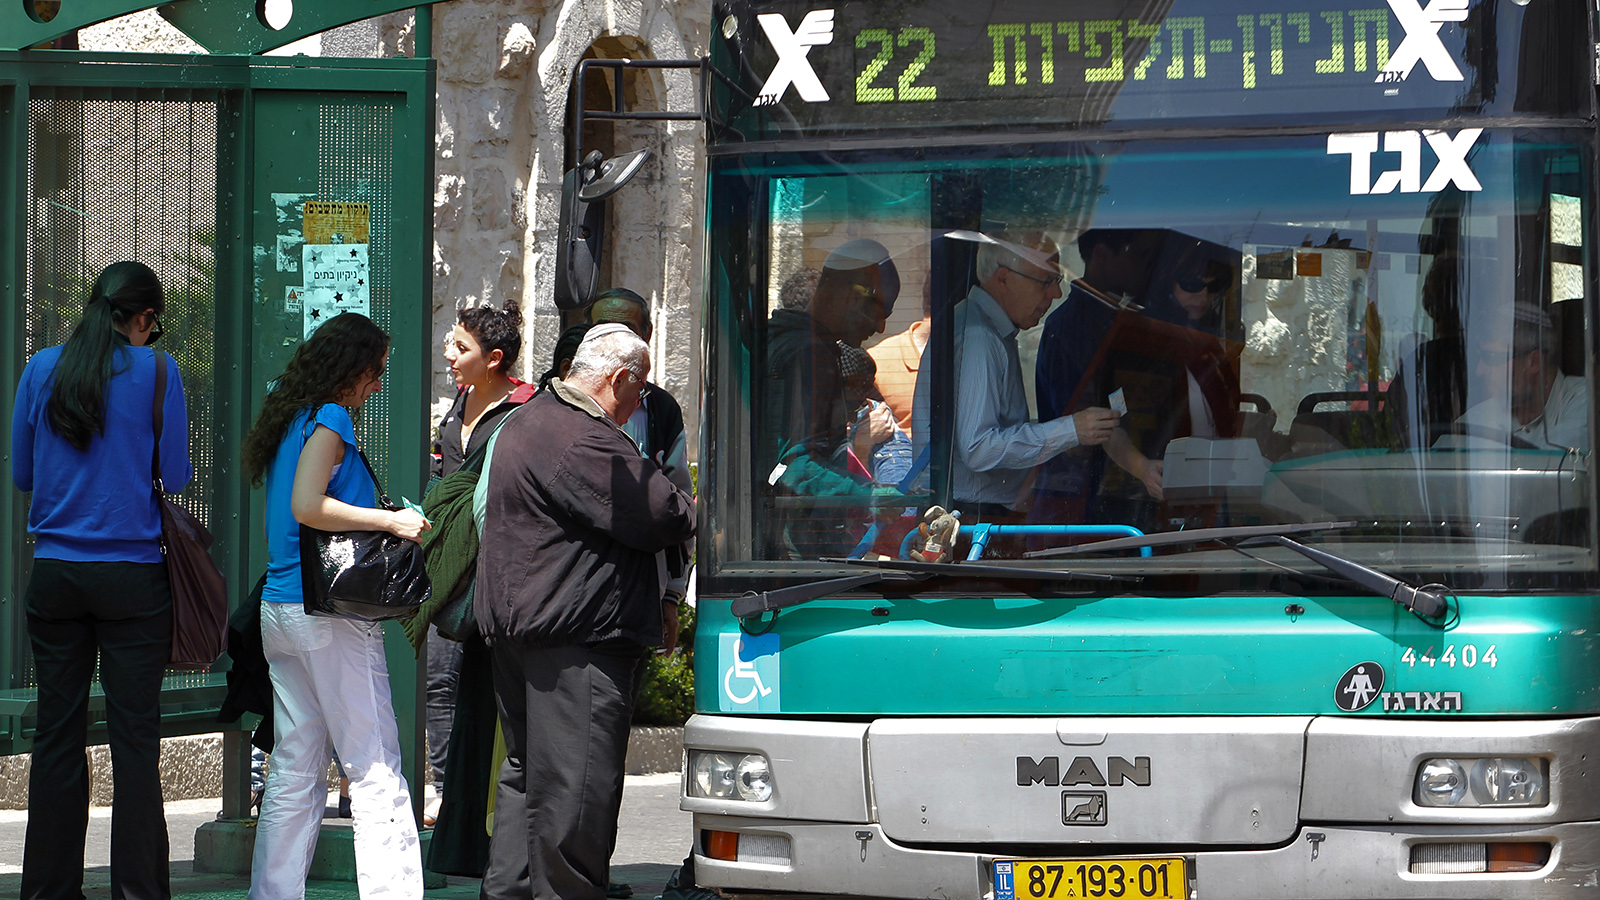 נוסעים עולים על אוטובוס אגד בירושלים, ארכיון (צילום: נתי שוחט / פלאש 90).